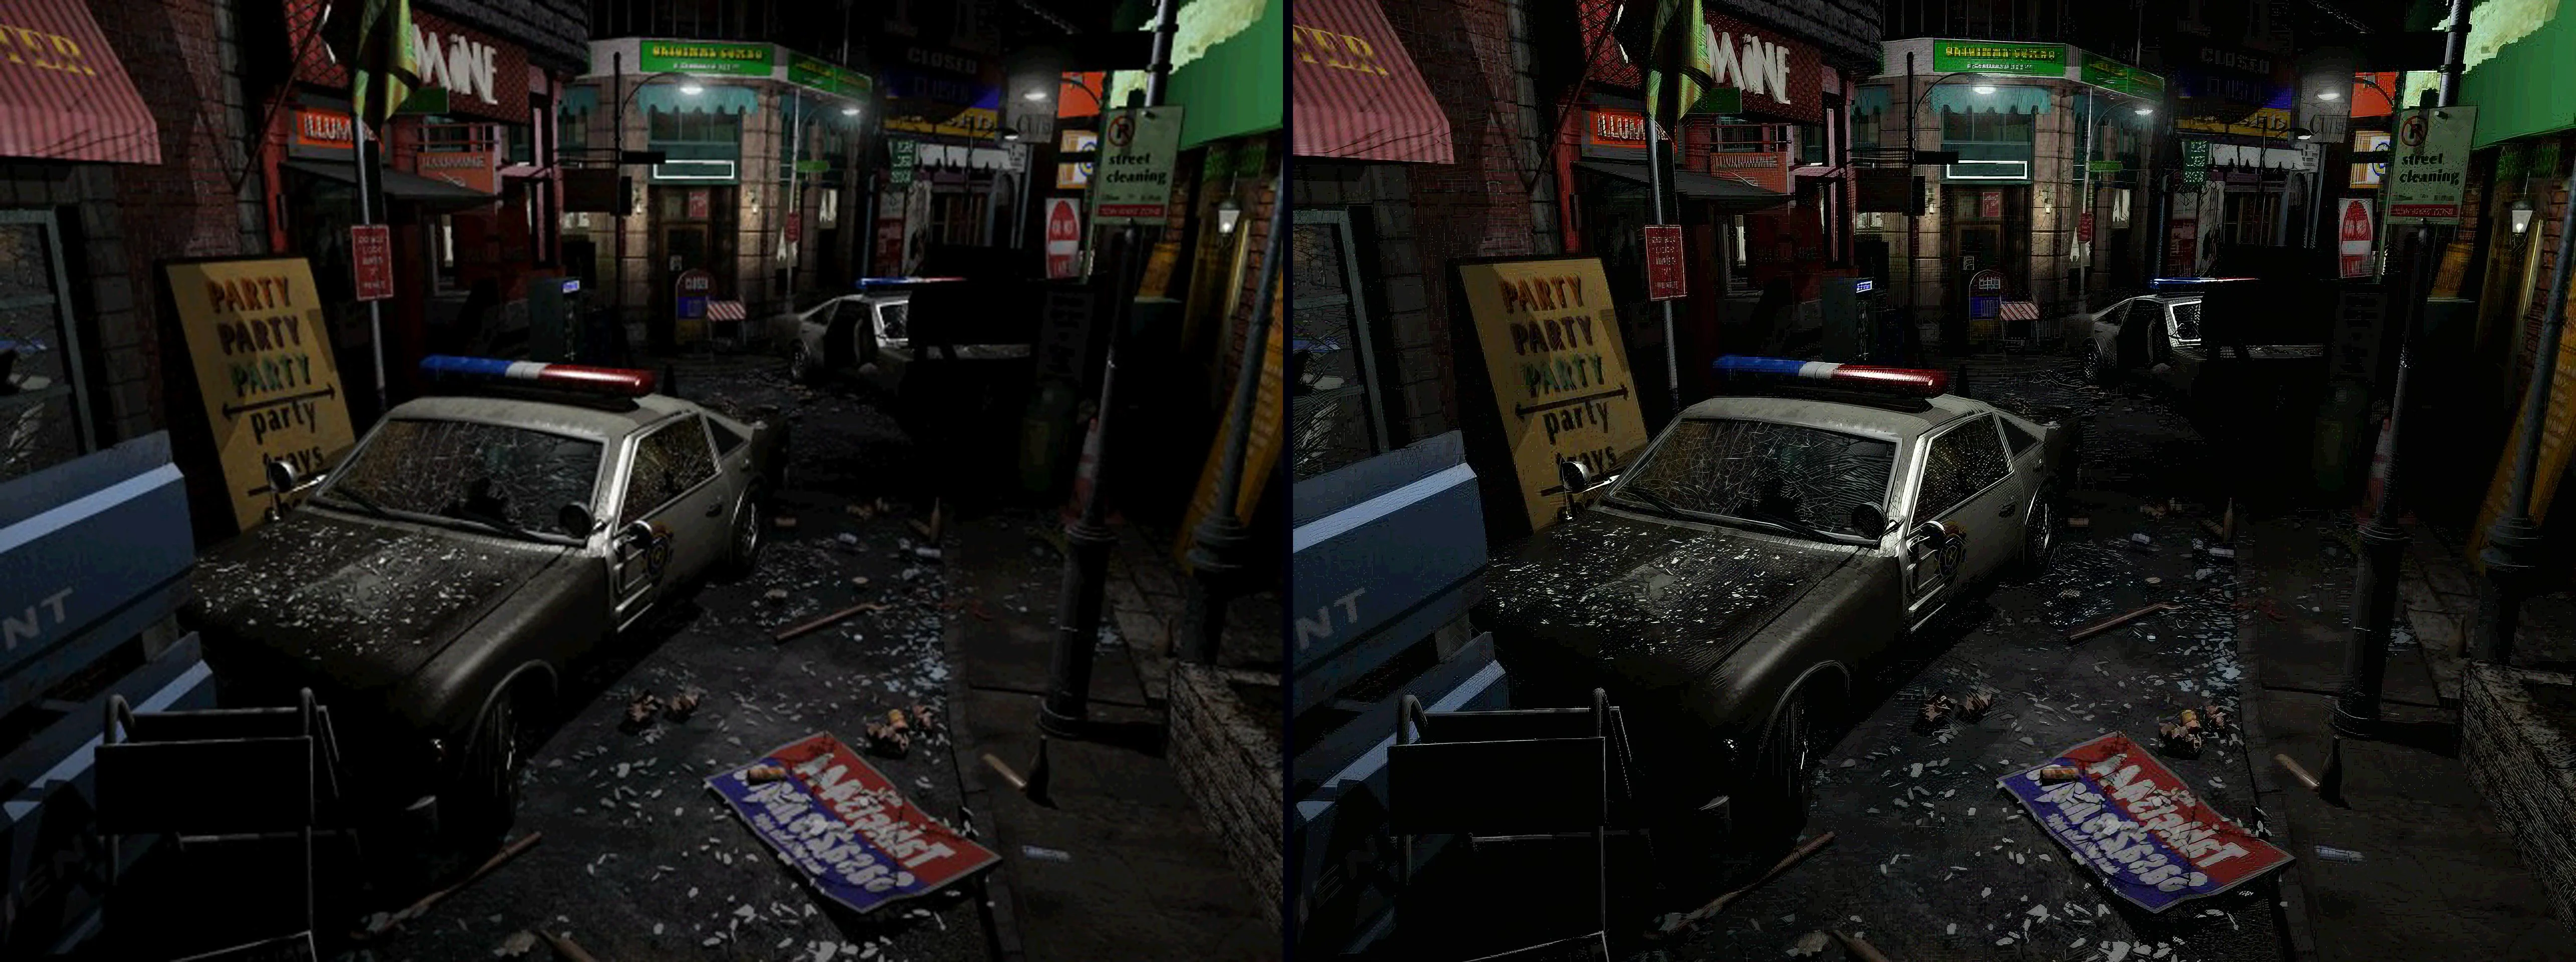 Энтузиаст с помощью нейросетей сделал задние фоны в Resident Evil 3: Nemesis еще красивее - фото 2